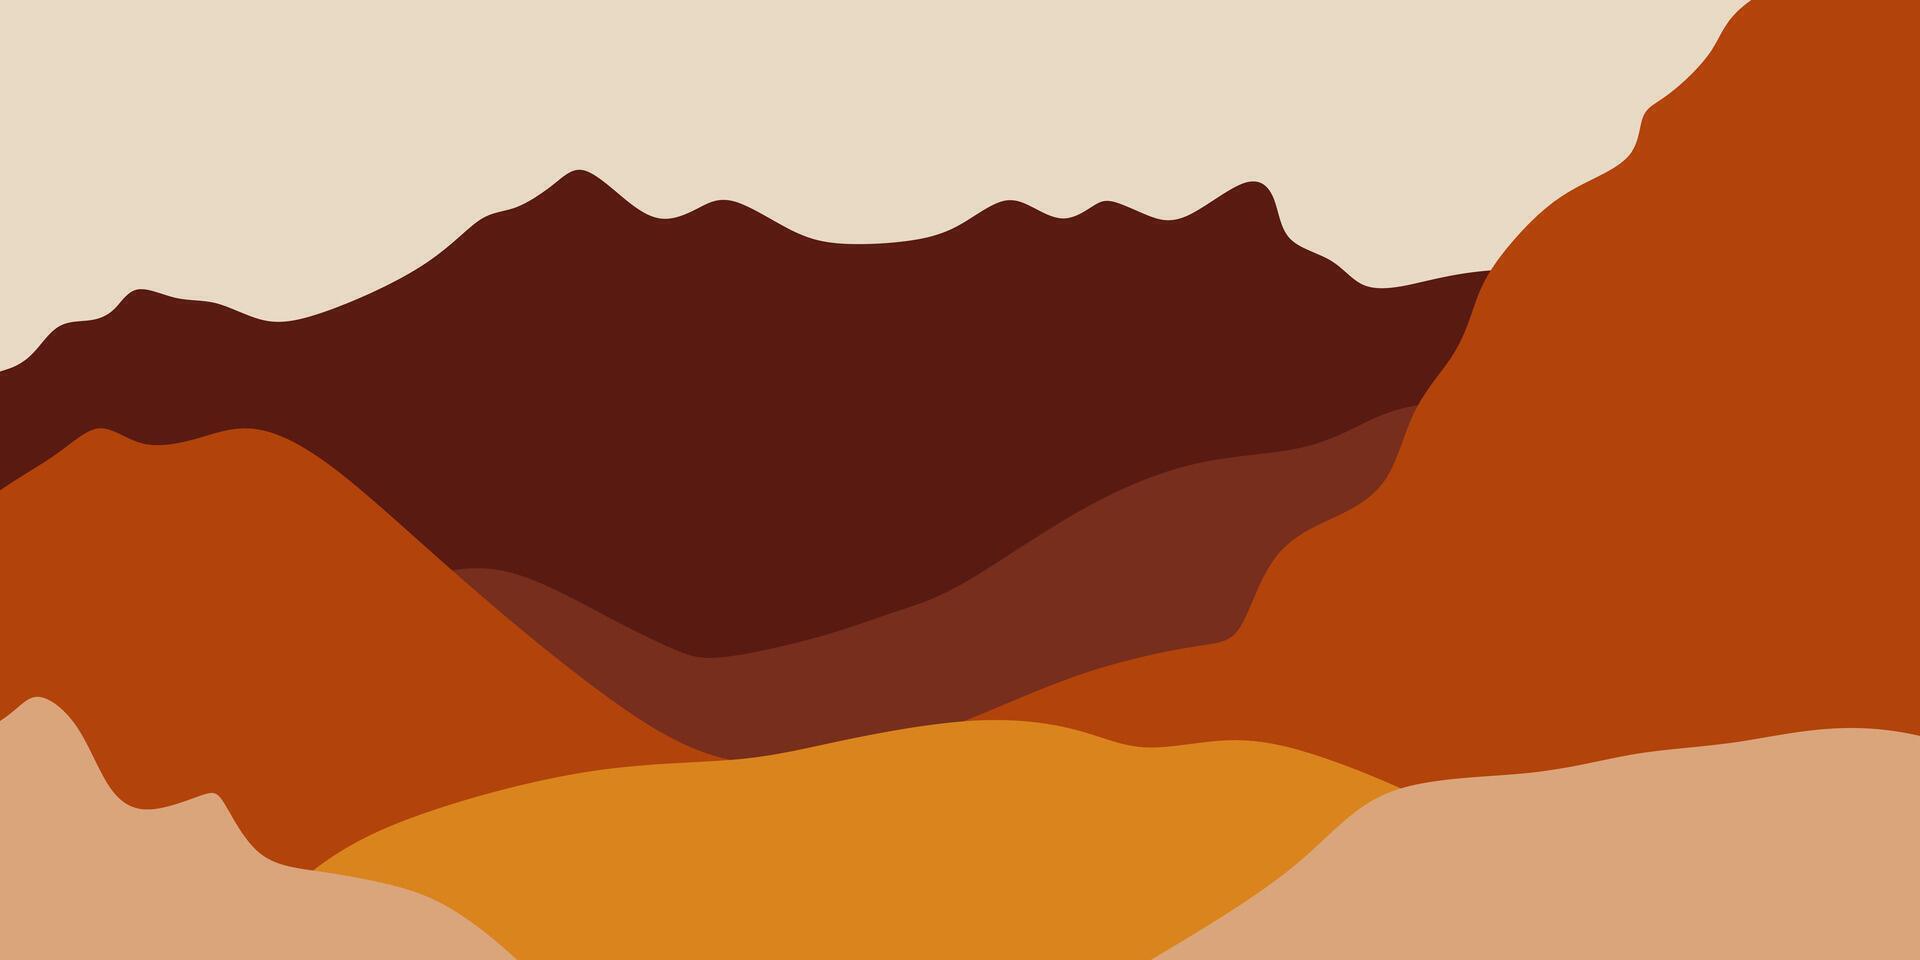 abstrait Montagne bohémien paysage illustration vecteur